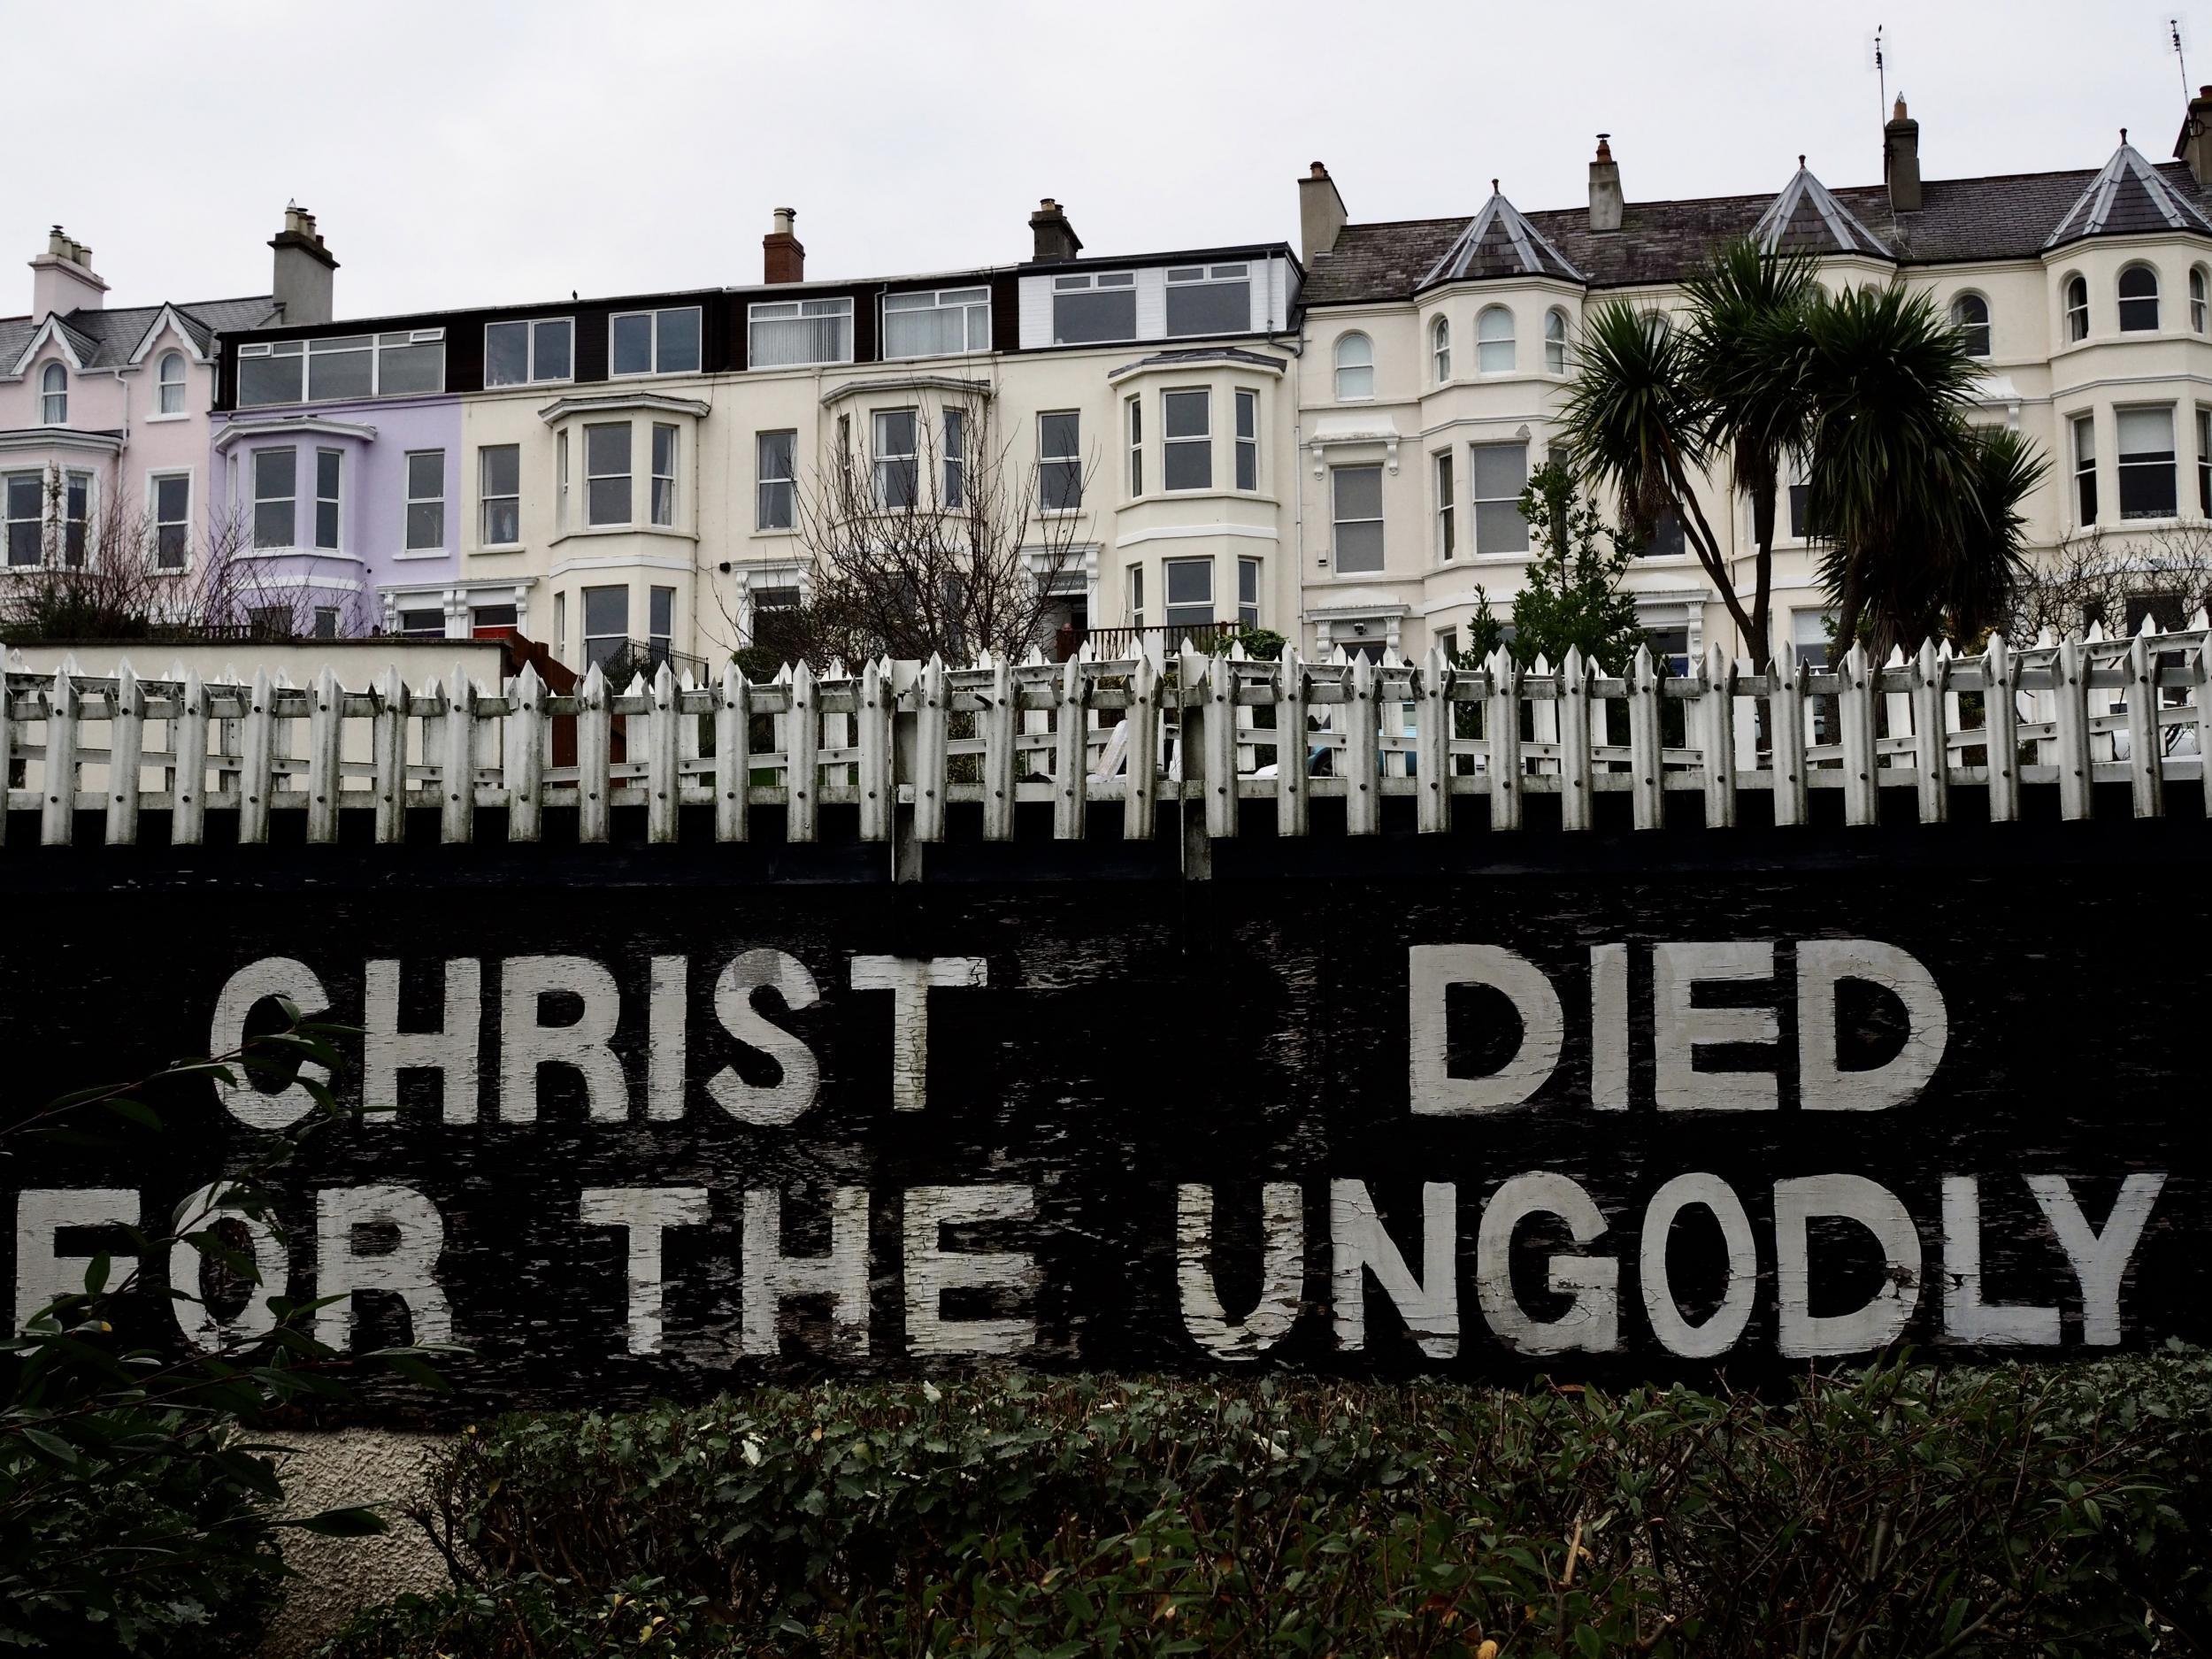 Bangor: „Krisztus az istentelenekért halt meg.” Erkölcsi ítélet, háttérben lakónegyeddel. Az üzenet mindenkit bevon a vallási narratívába: aki nem hisz, annak van a legtöbb adóssága. (Richard Morgan / The Independent)